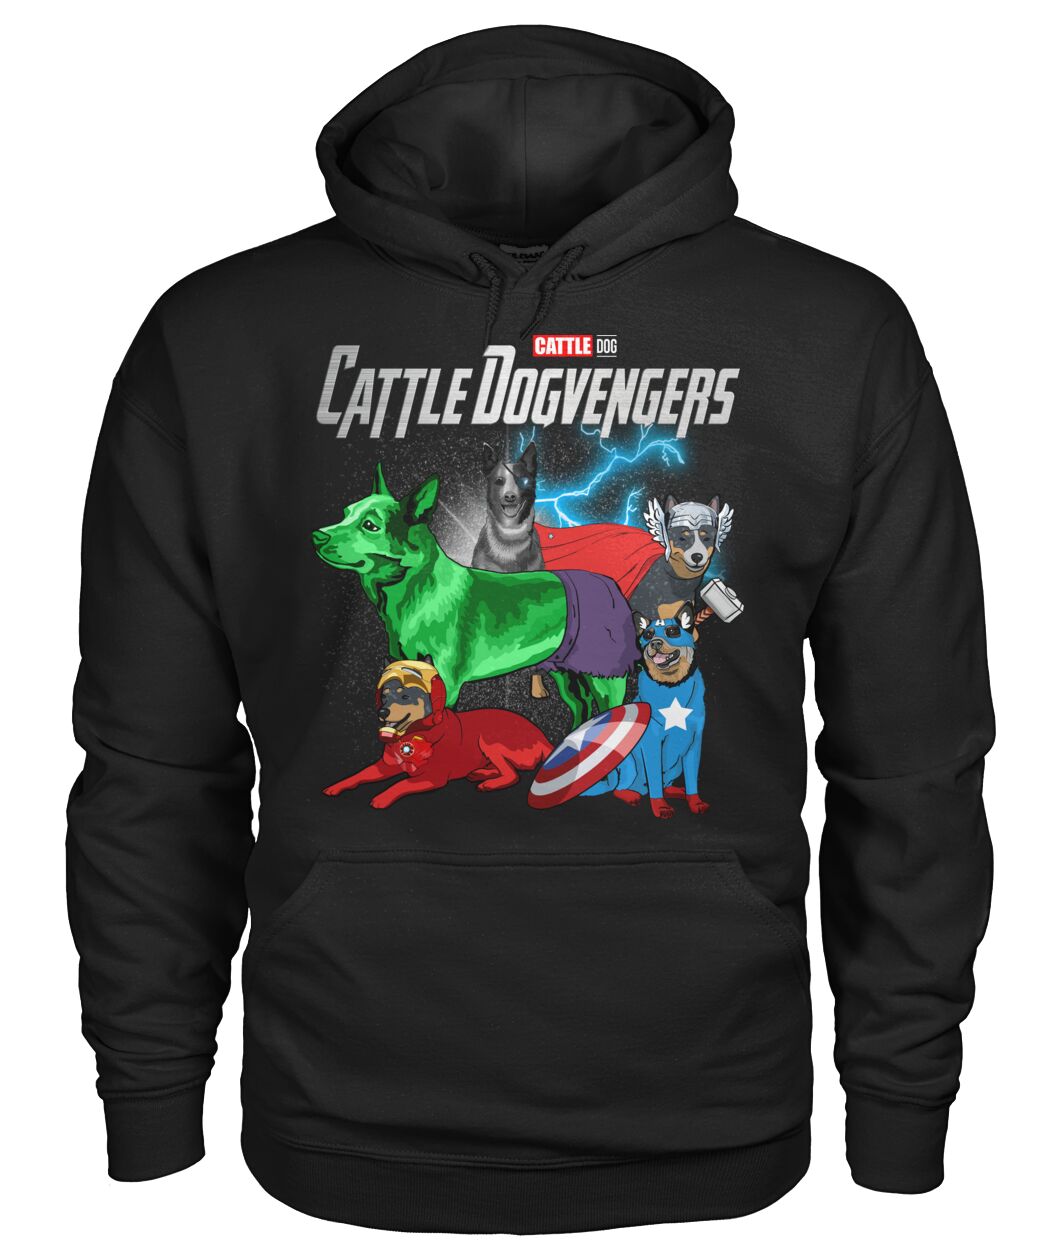 Cattle Dogvengers 3D Hoodie, Shirt 8